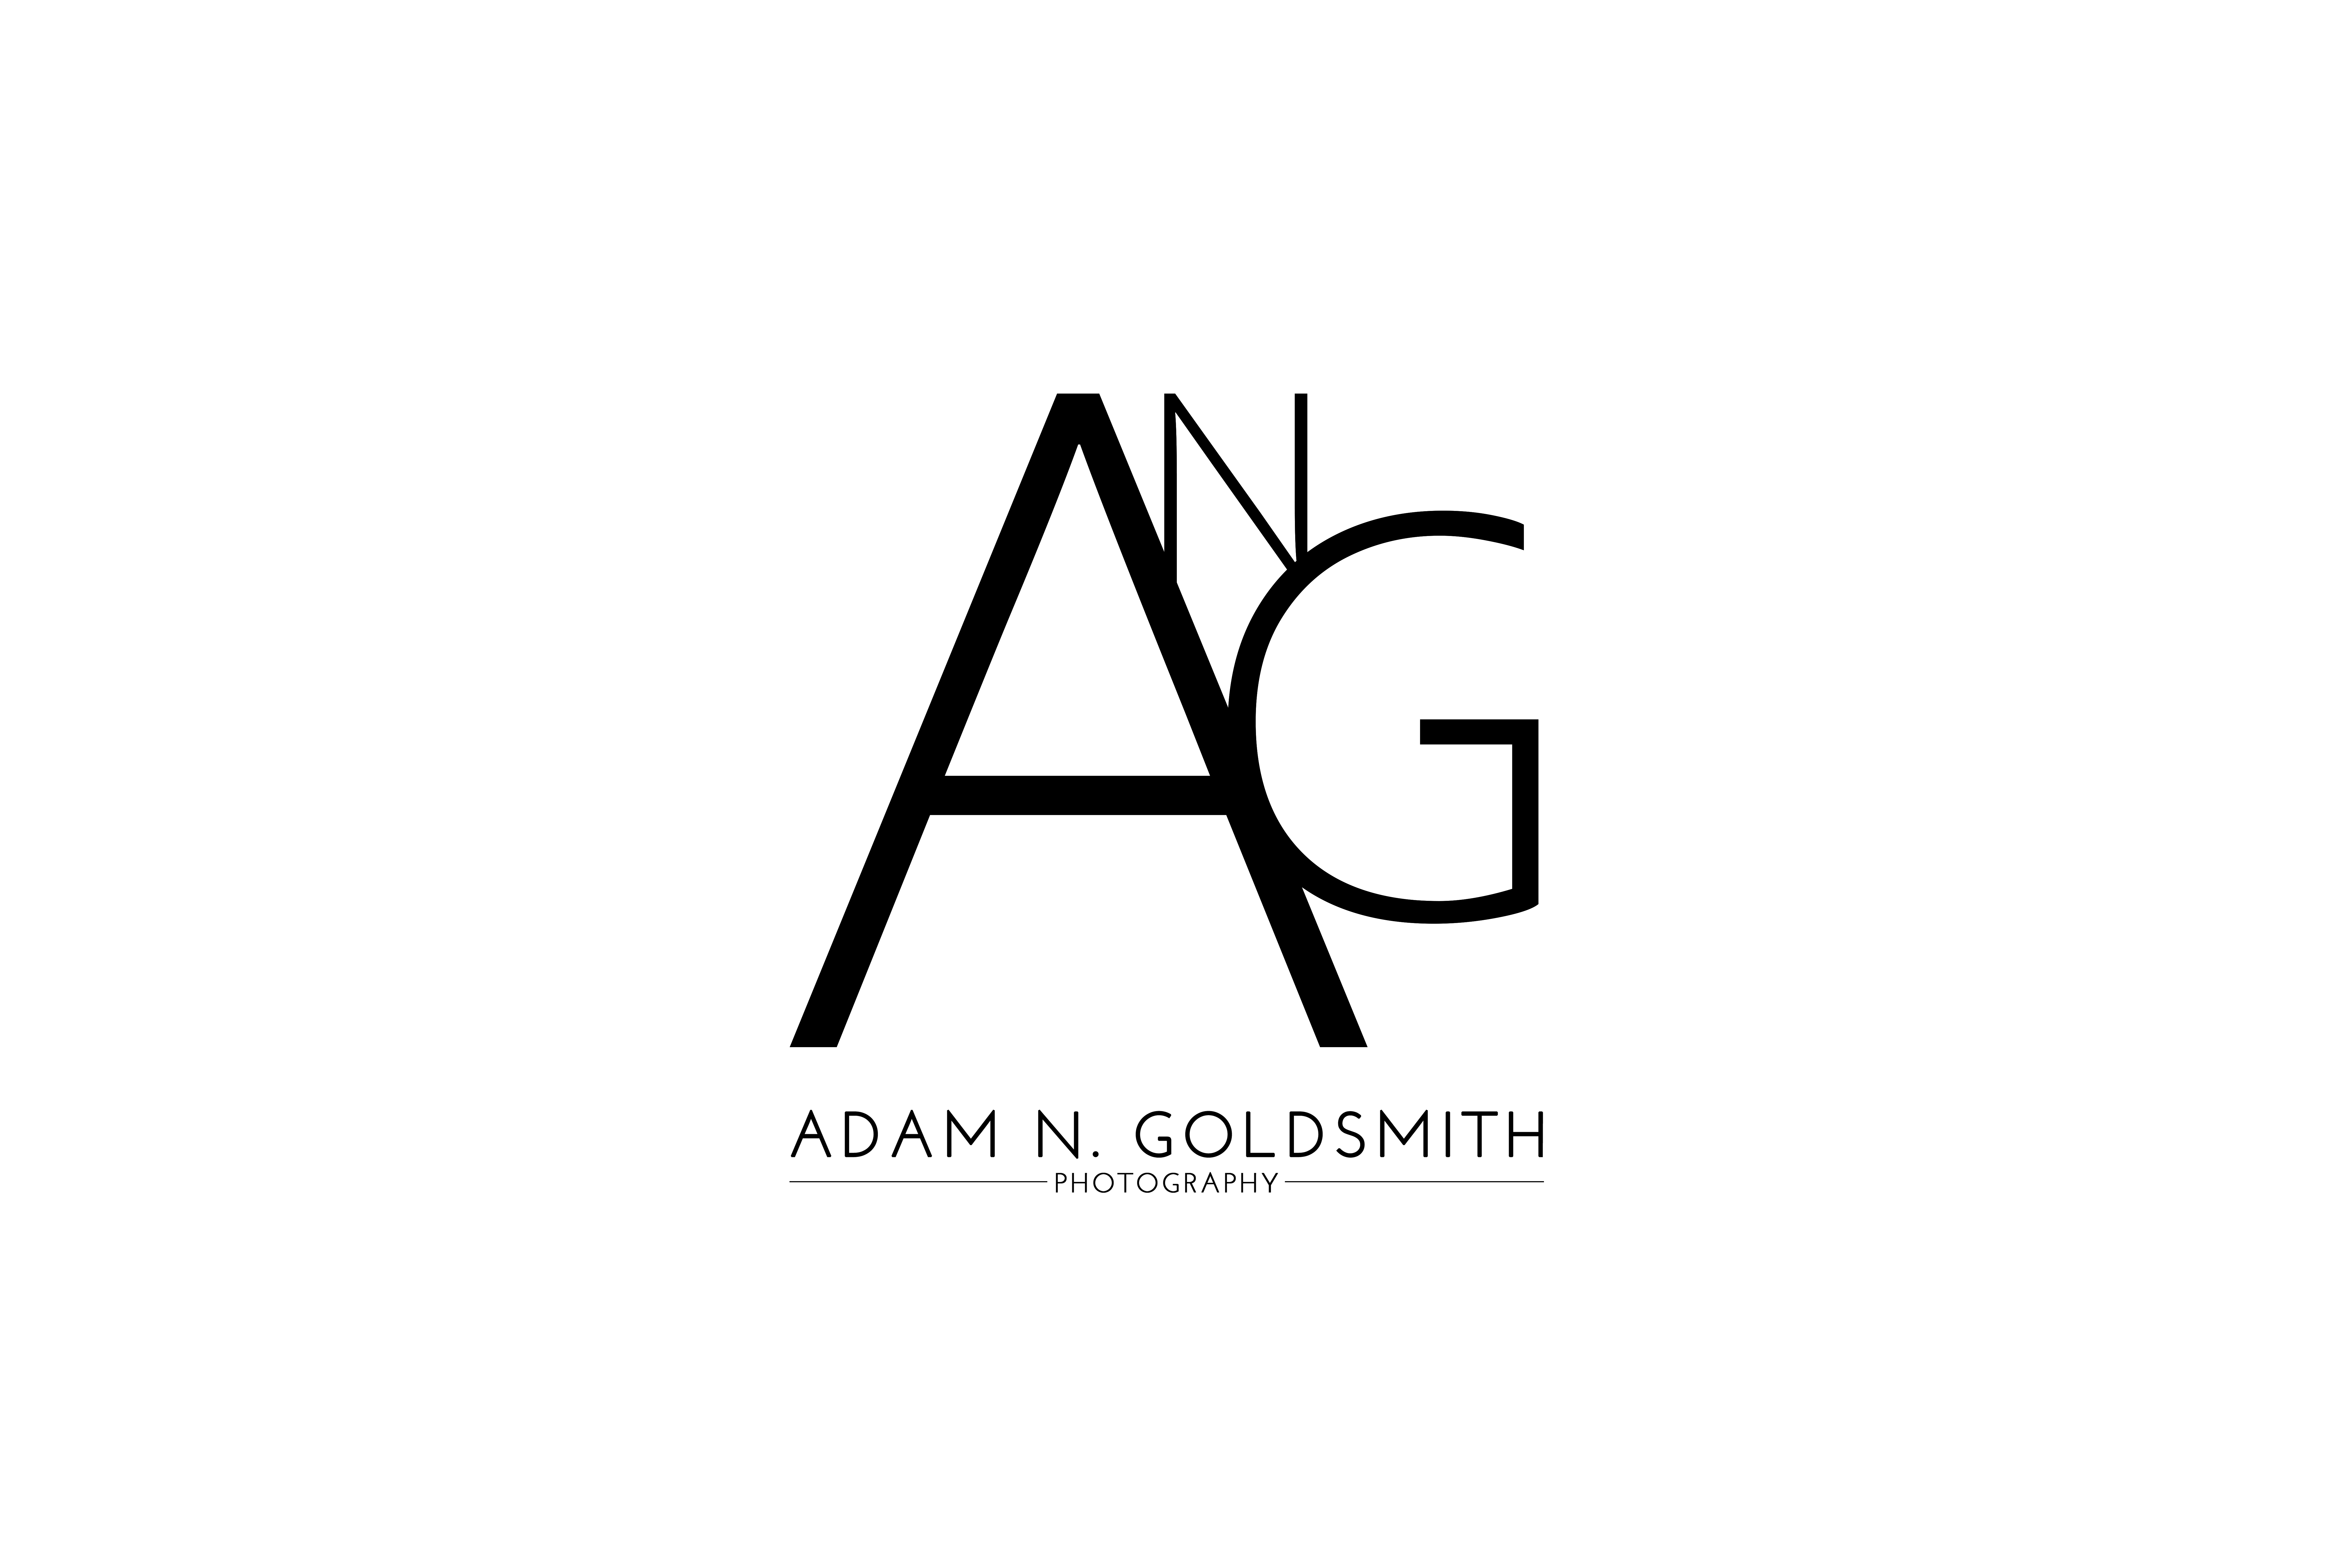 Calligraphy Studio Style AG Letter Logo Design - Brand Identity